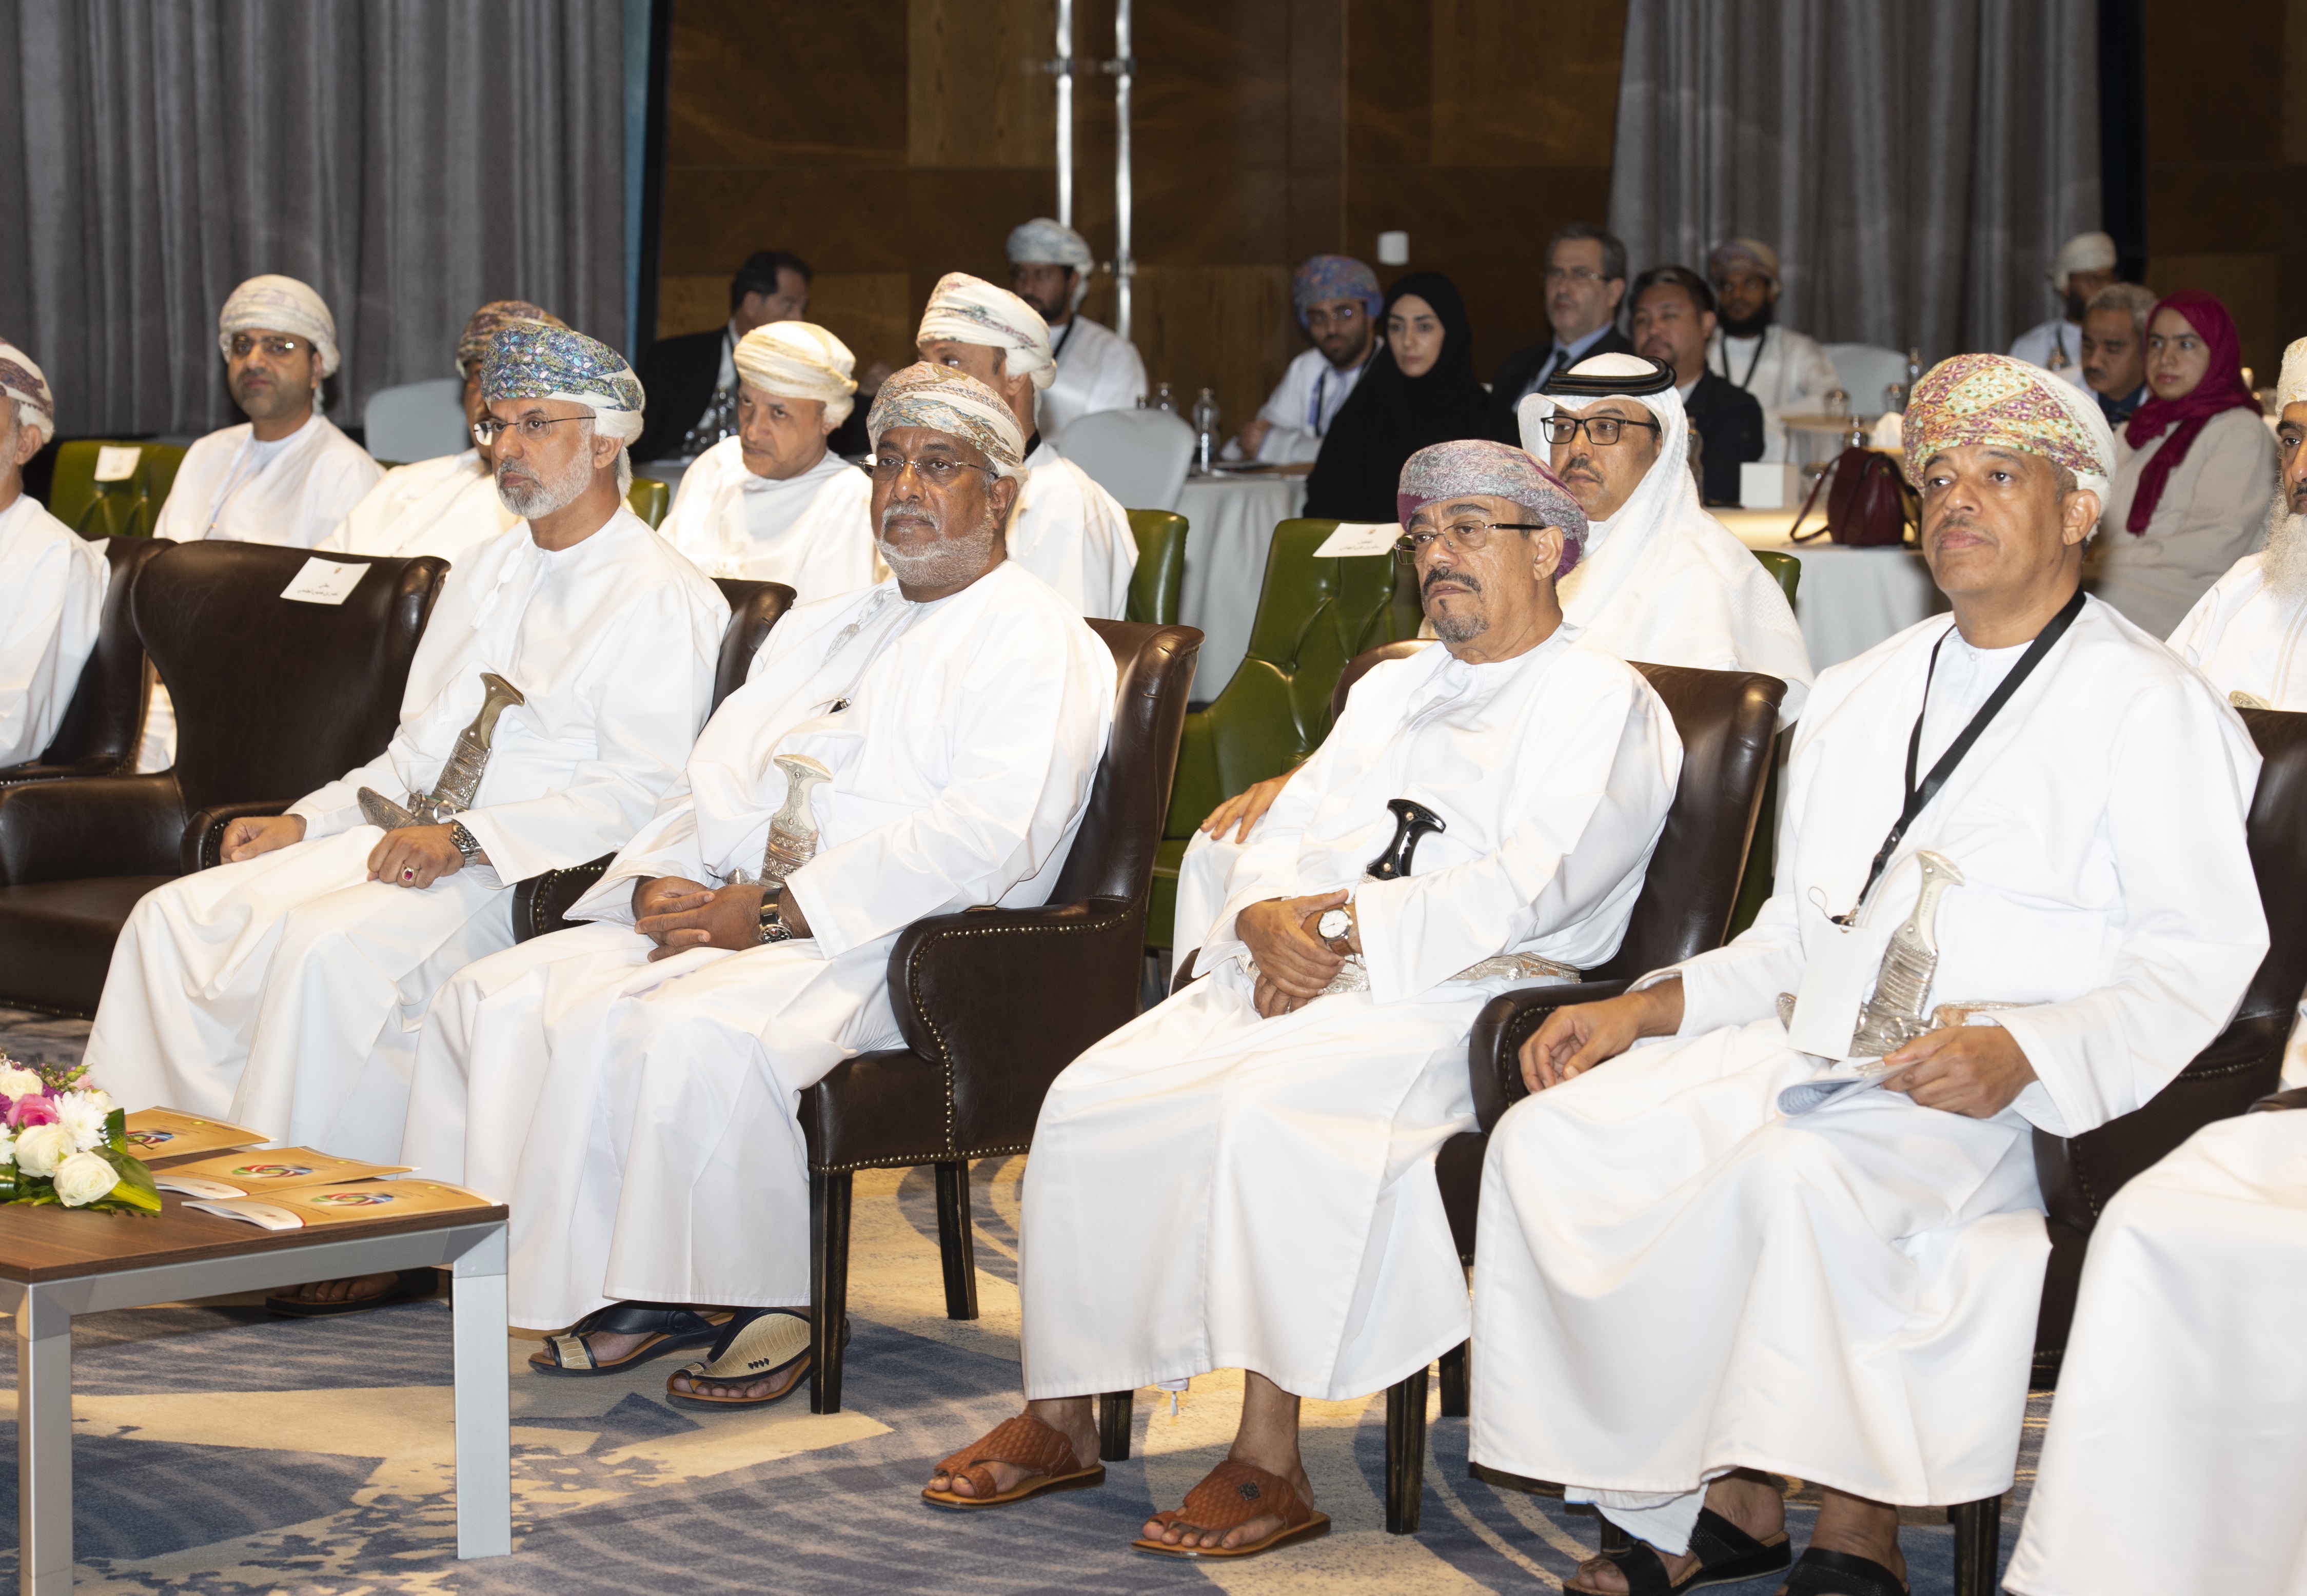 "دور النفط في اقتصاد دول الخليج" محور مؤتمر خليجي بجامعة السلطان قابوس